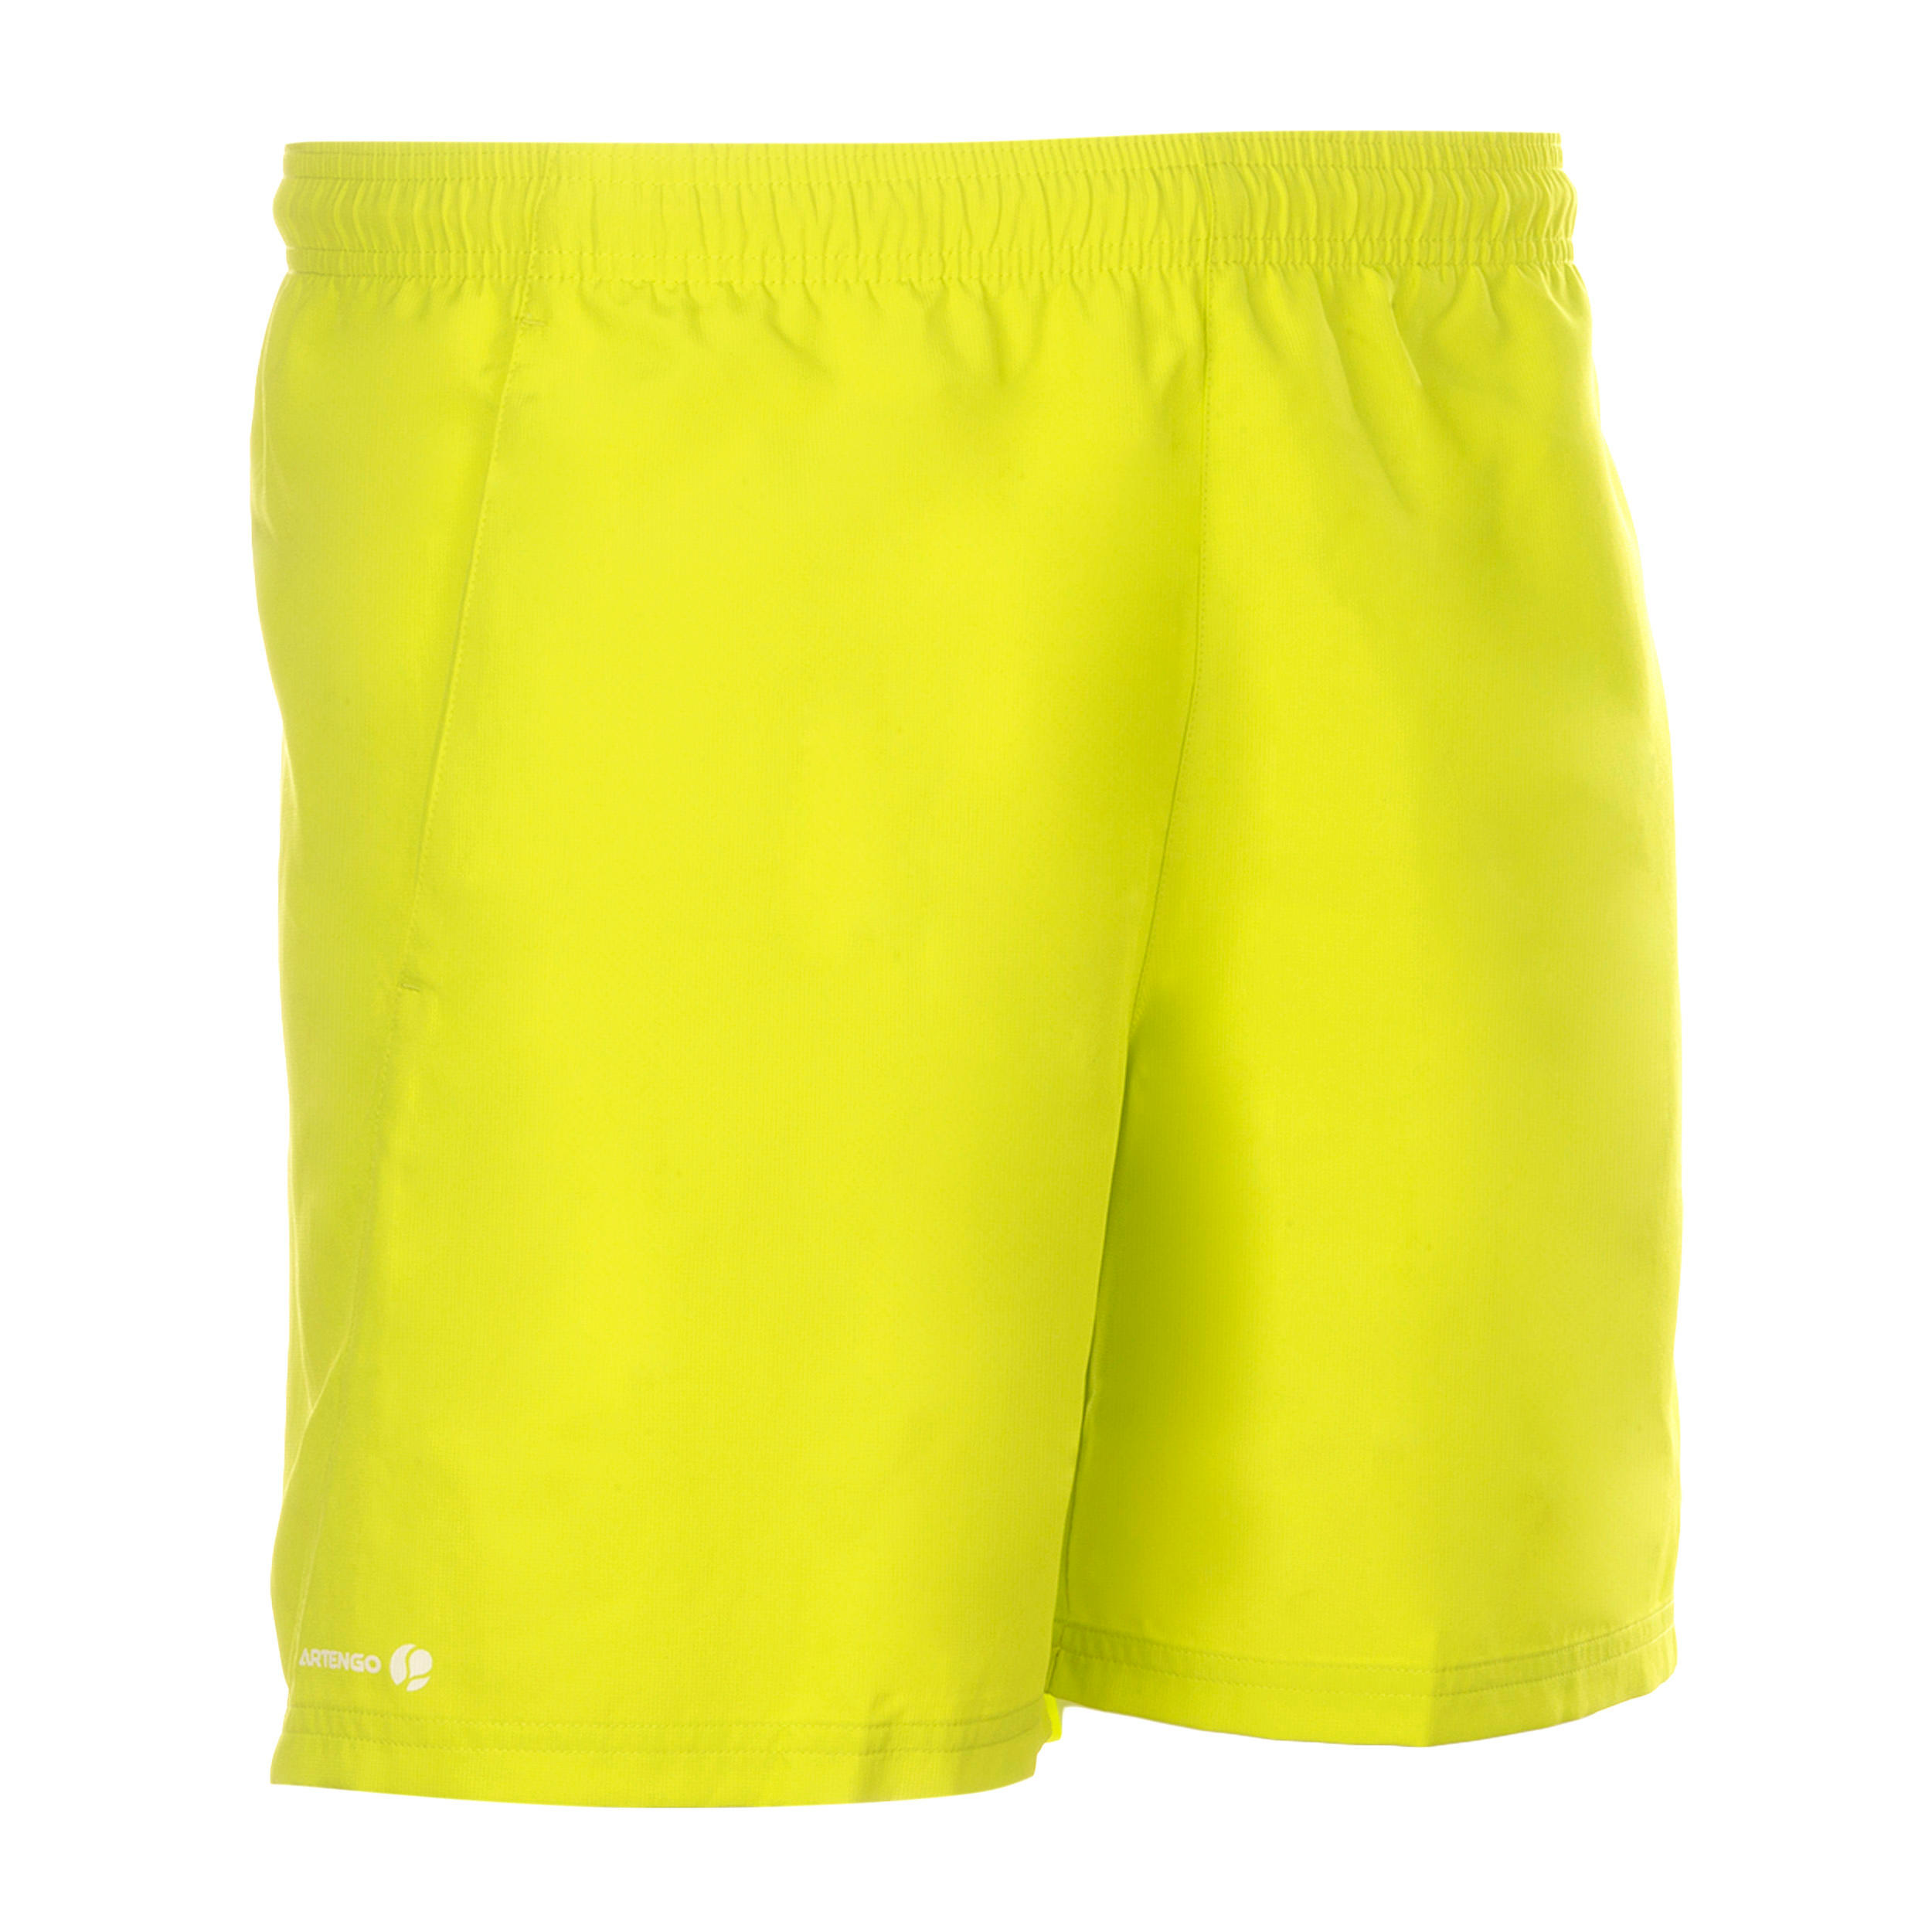 Essential 100 Padel Tennis Badminton Squash Table Tennis Shorts - Yellow 1/7